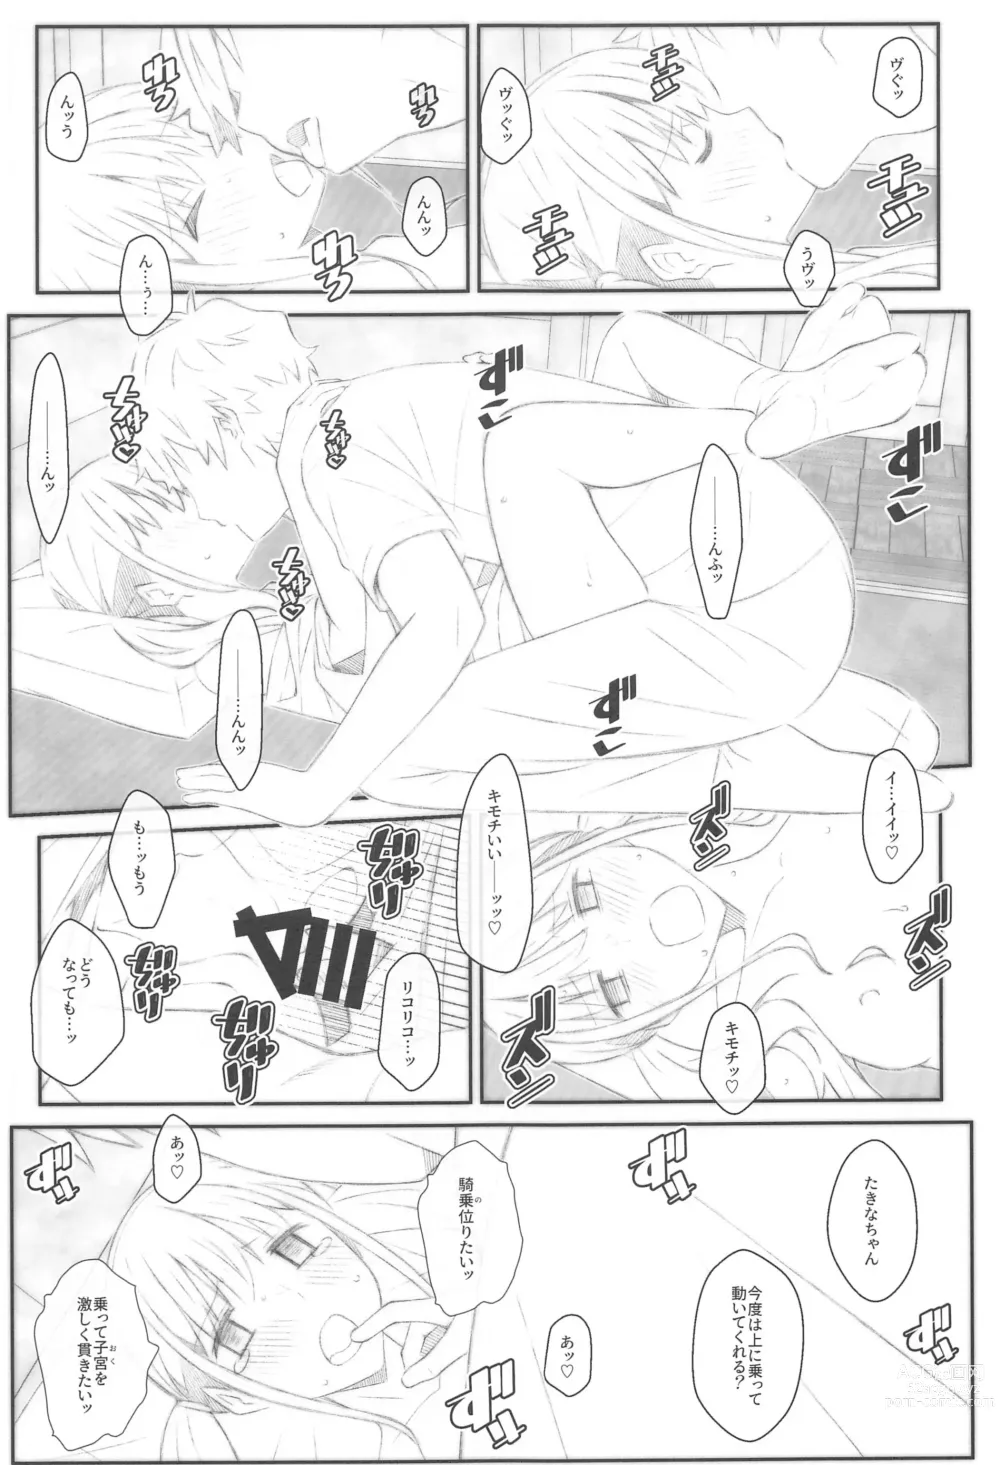 Page 16 of doujinshi TYPE-68b